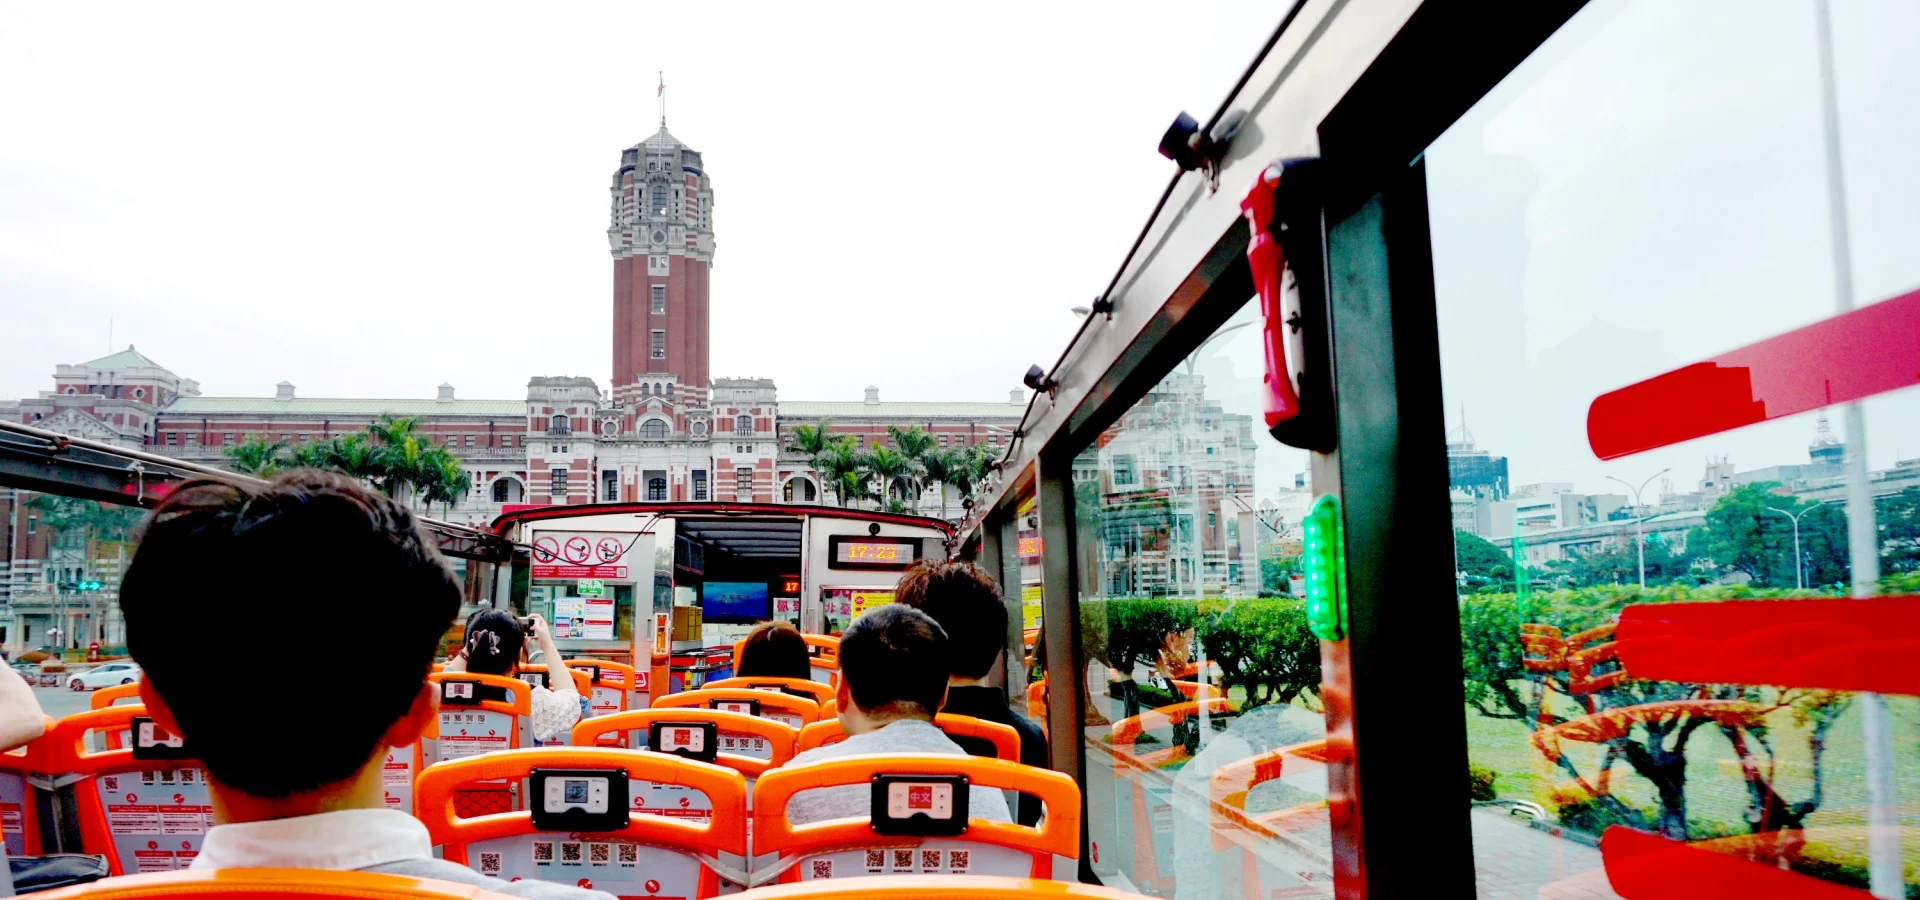 台湾 台北 オープントップバス 乗車Eチケット 予約